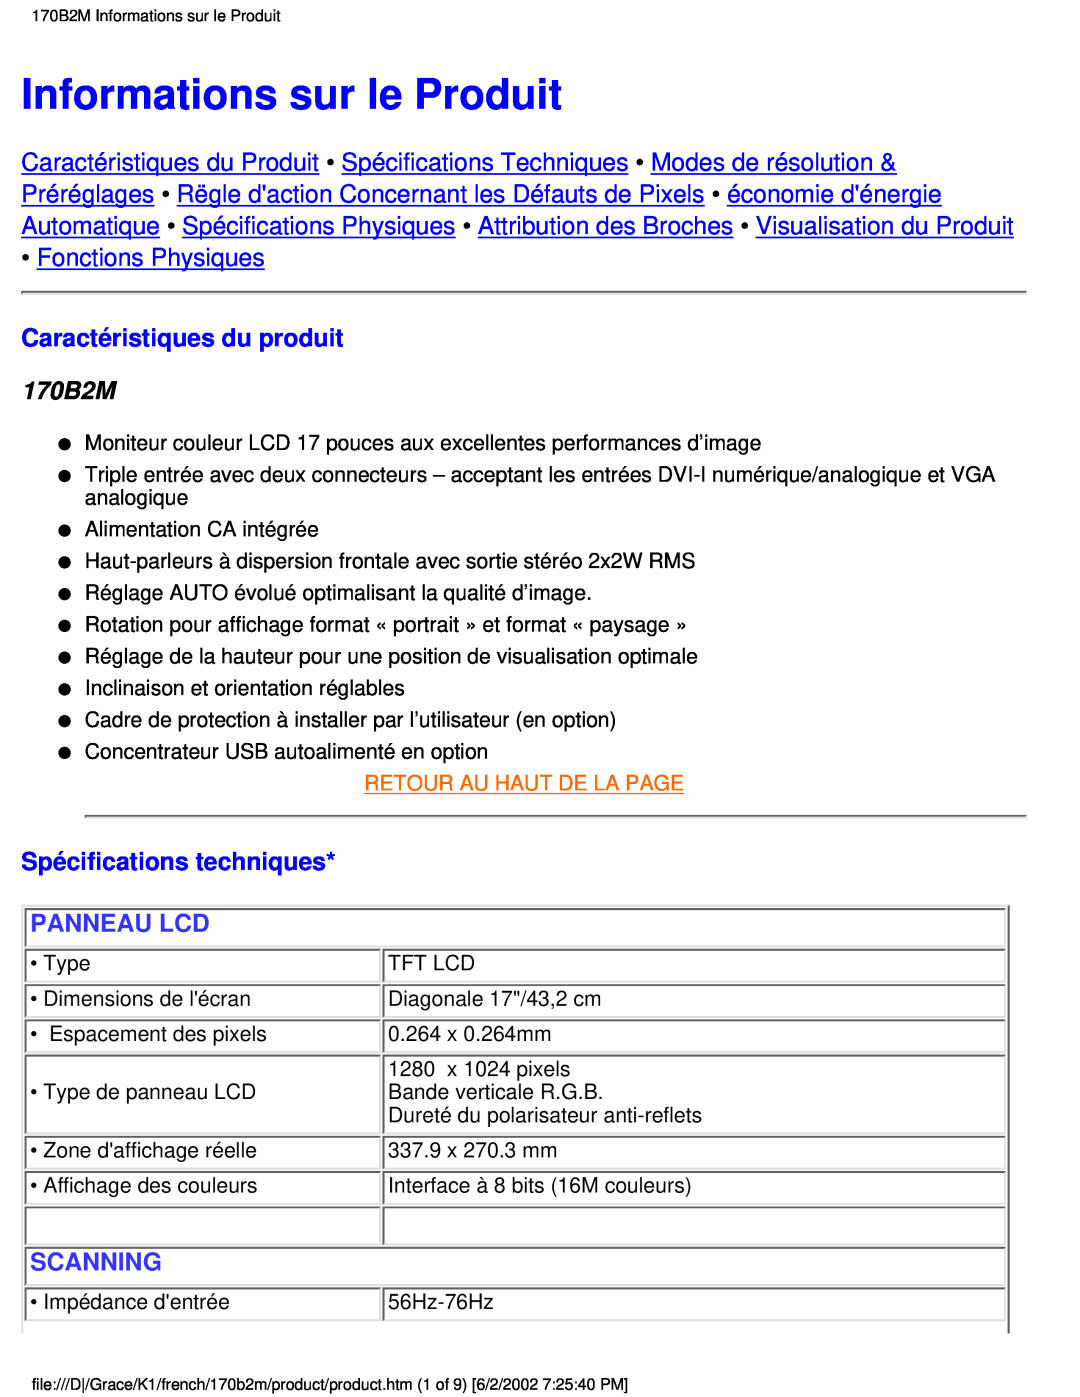 Philips 170B2M Informations sur le Produit, Fonctions Physiques, Caractéristiques du produit, Spécifications techniques 